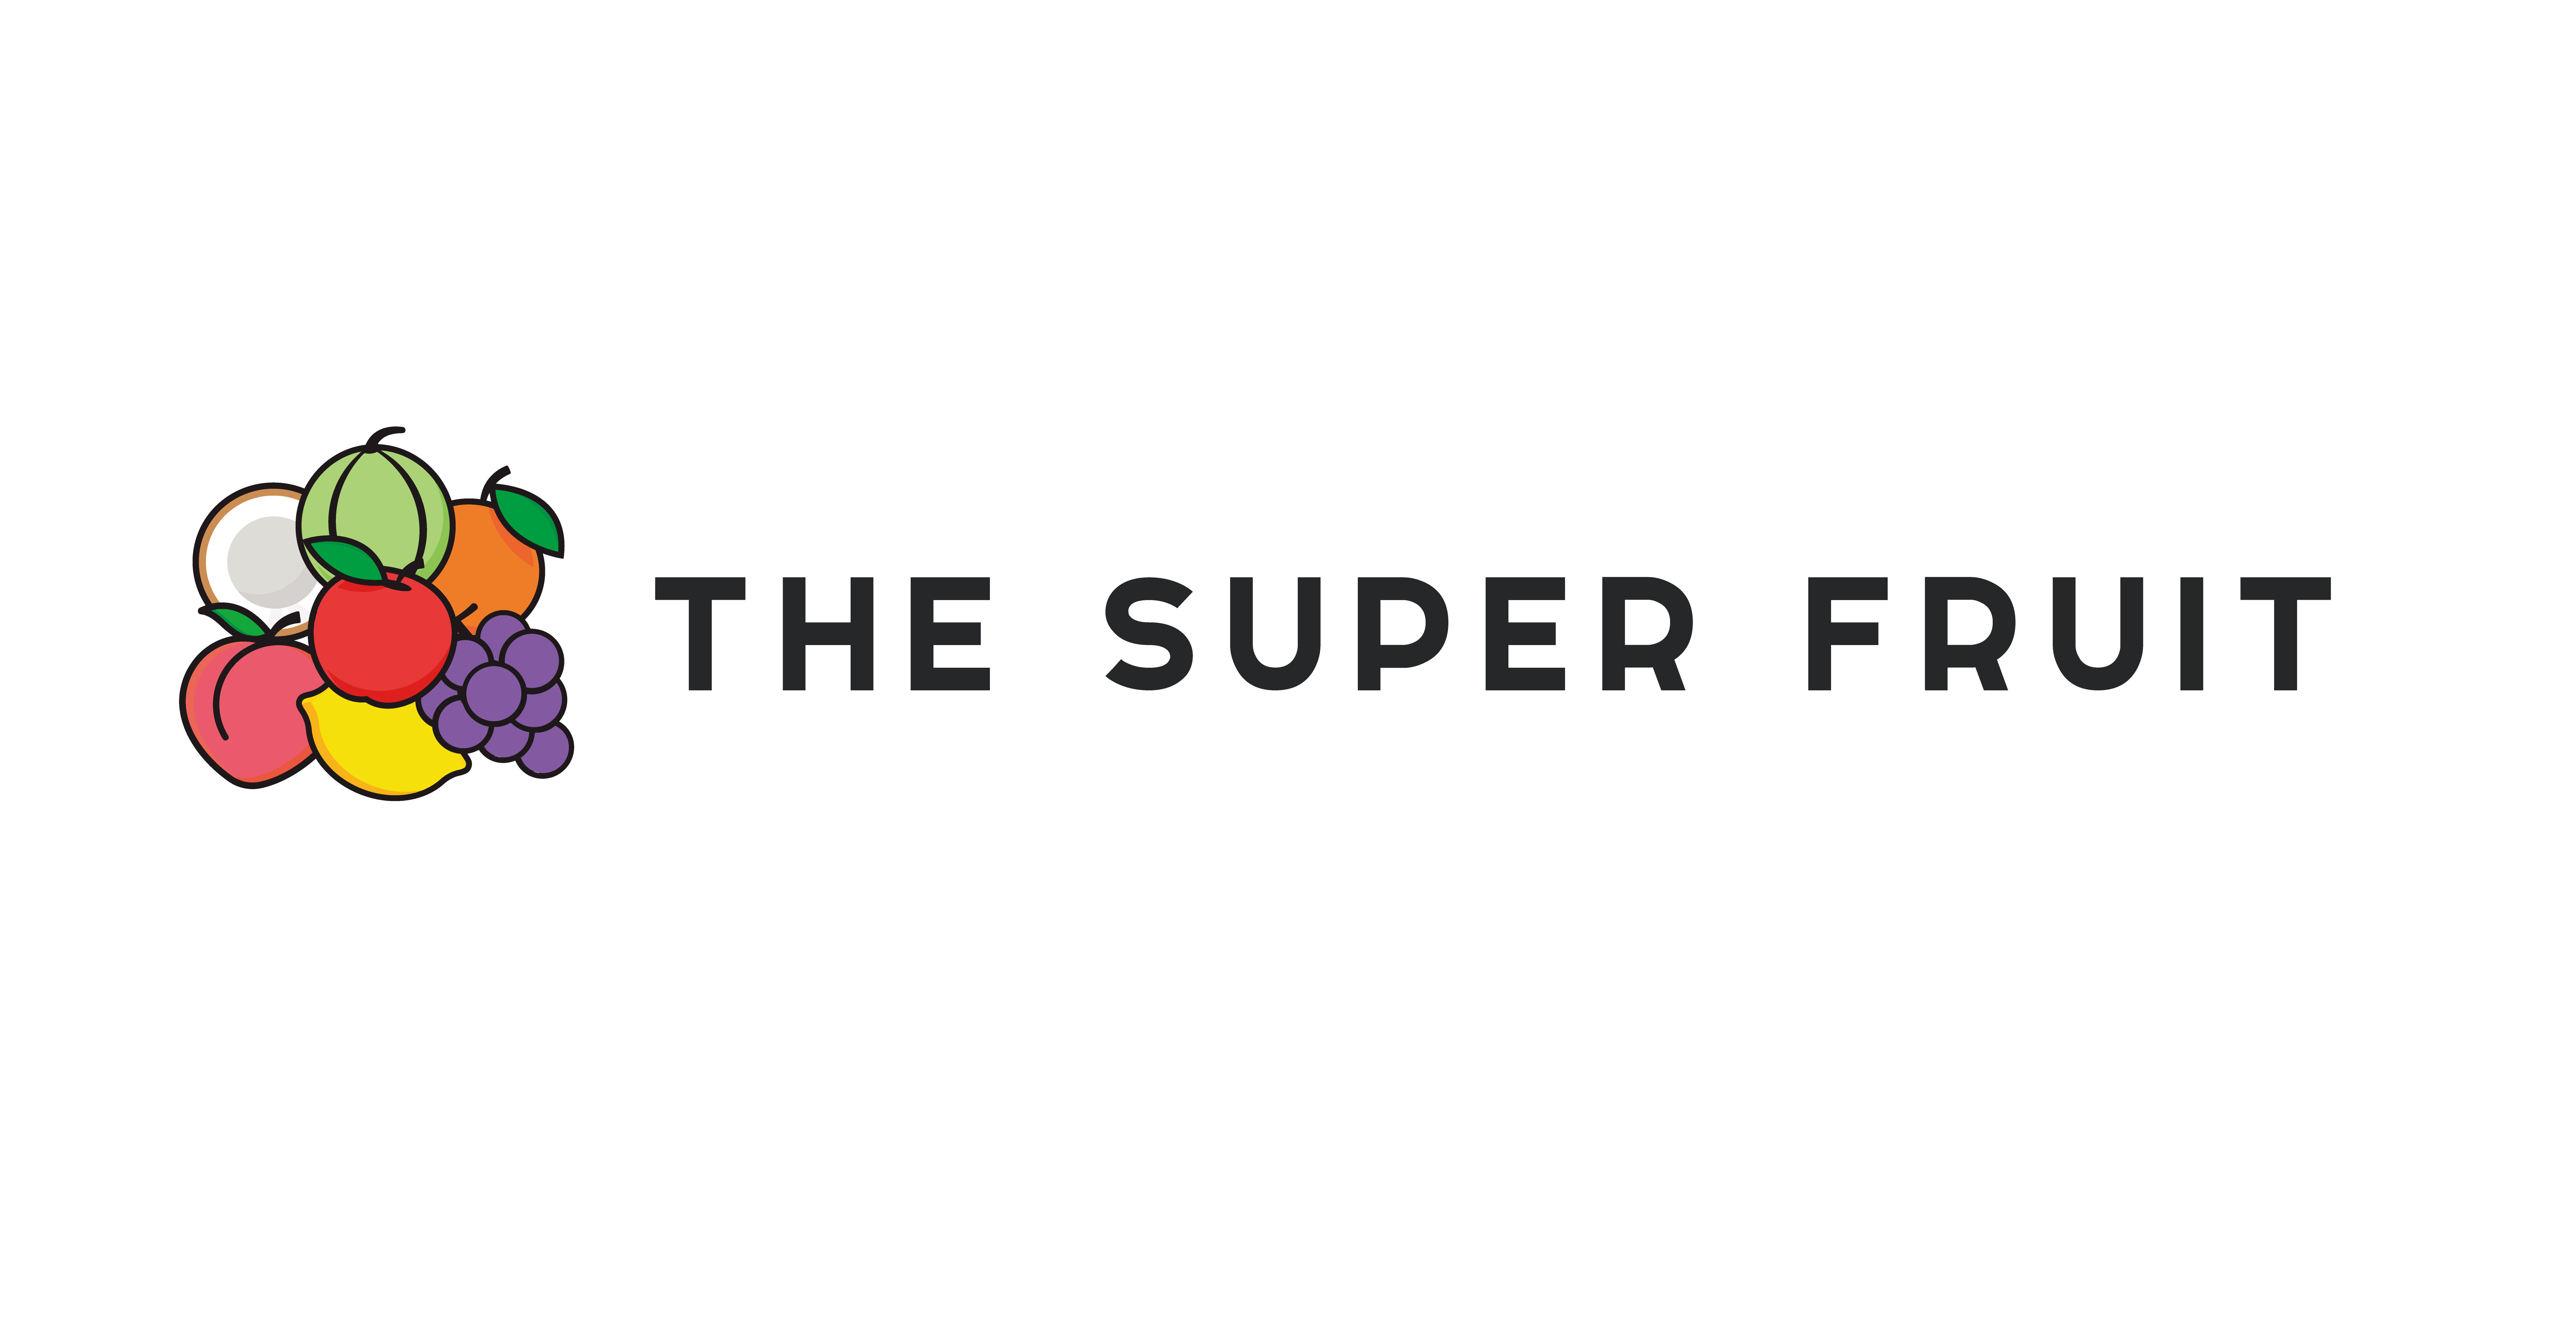 【重要なお知らせ】 3月27日(日)「THE SUPER FRUIT × 世が世なら!!! Loppi・HMV限定盤ミニアルバム発売記念イベント」＠大宮アルシェ 開催内容に関するお知らせ